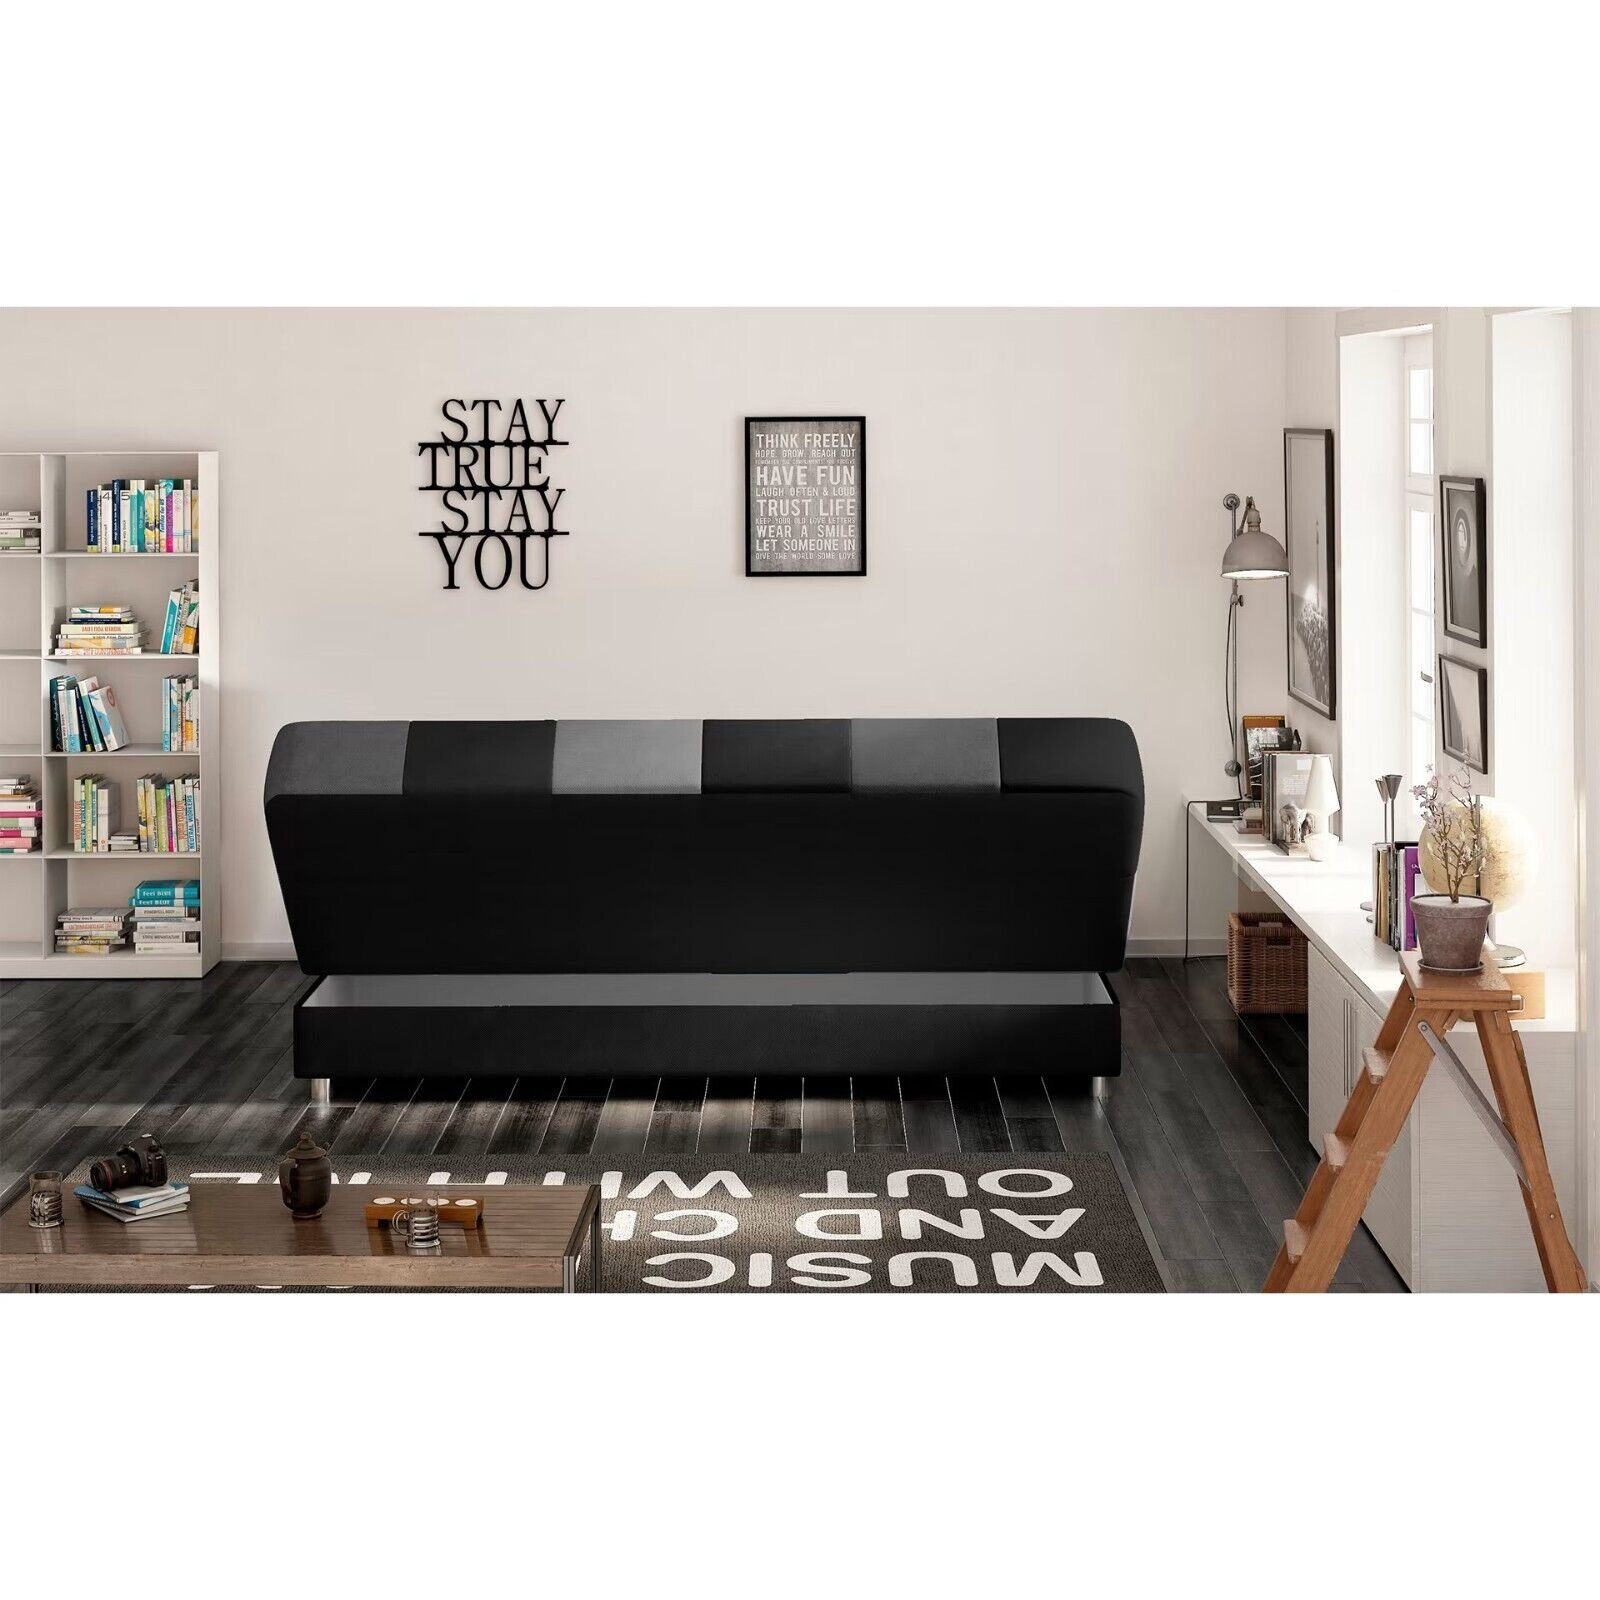 Luxus 1 Textil Wohnzimmer Schlafsofa Sofa JVmoebel Couch Made Sofort, in Modern Europa Teile, Wohnlandschaft